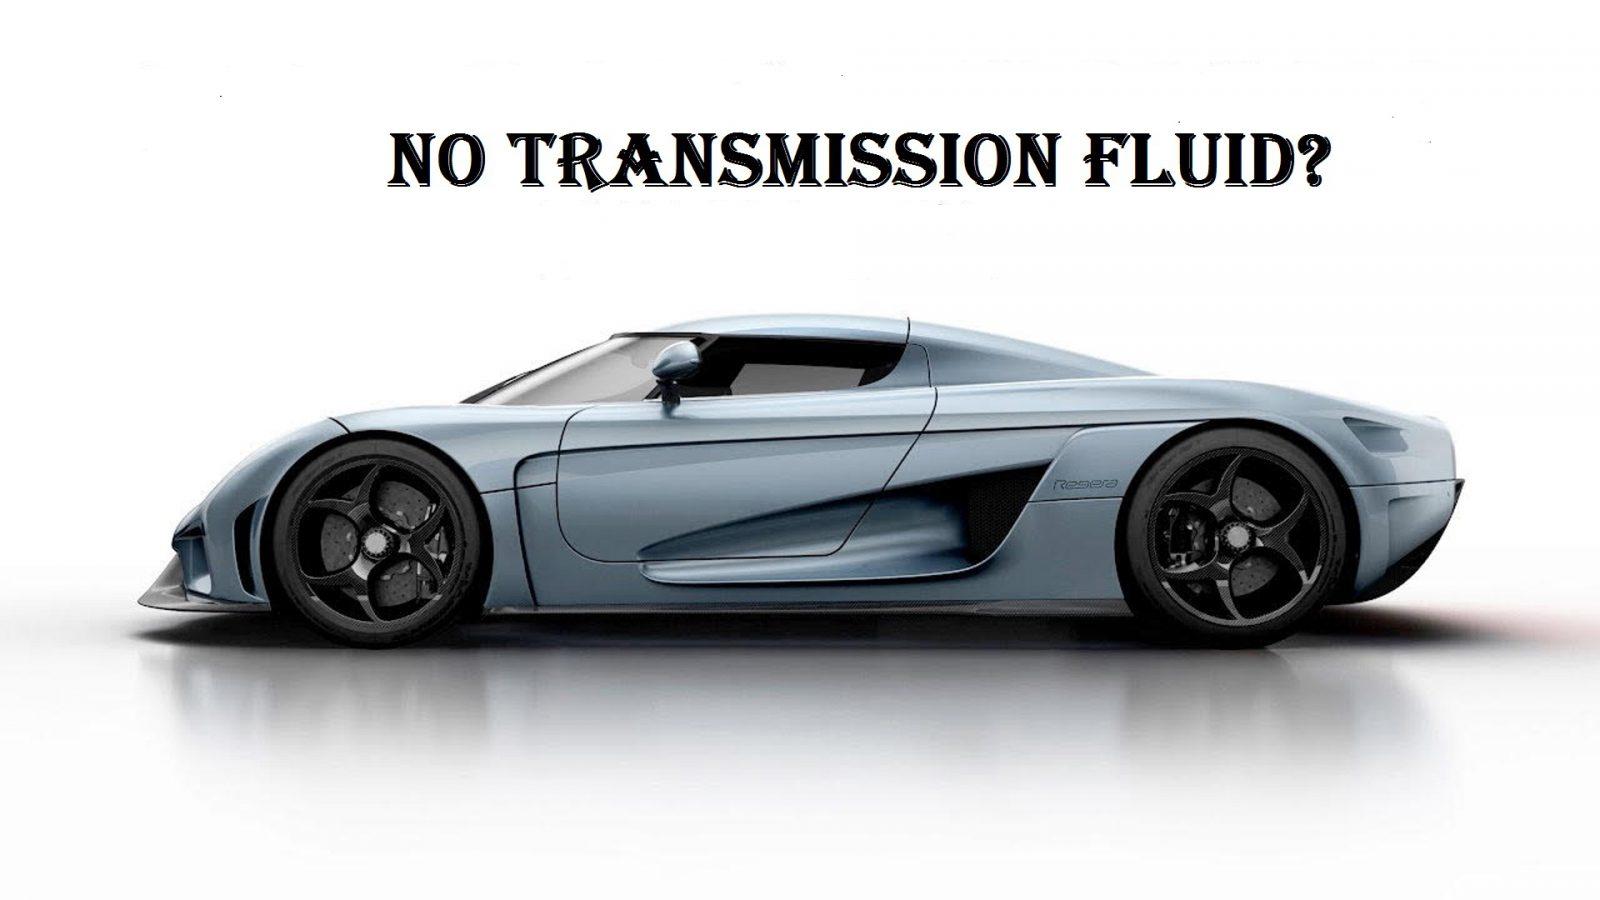 2008 f350 v10 transmission fluid change